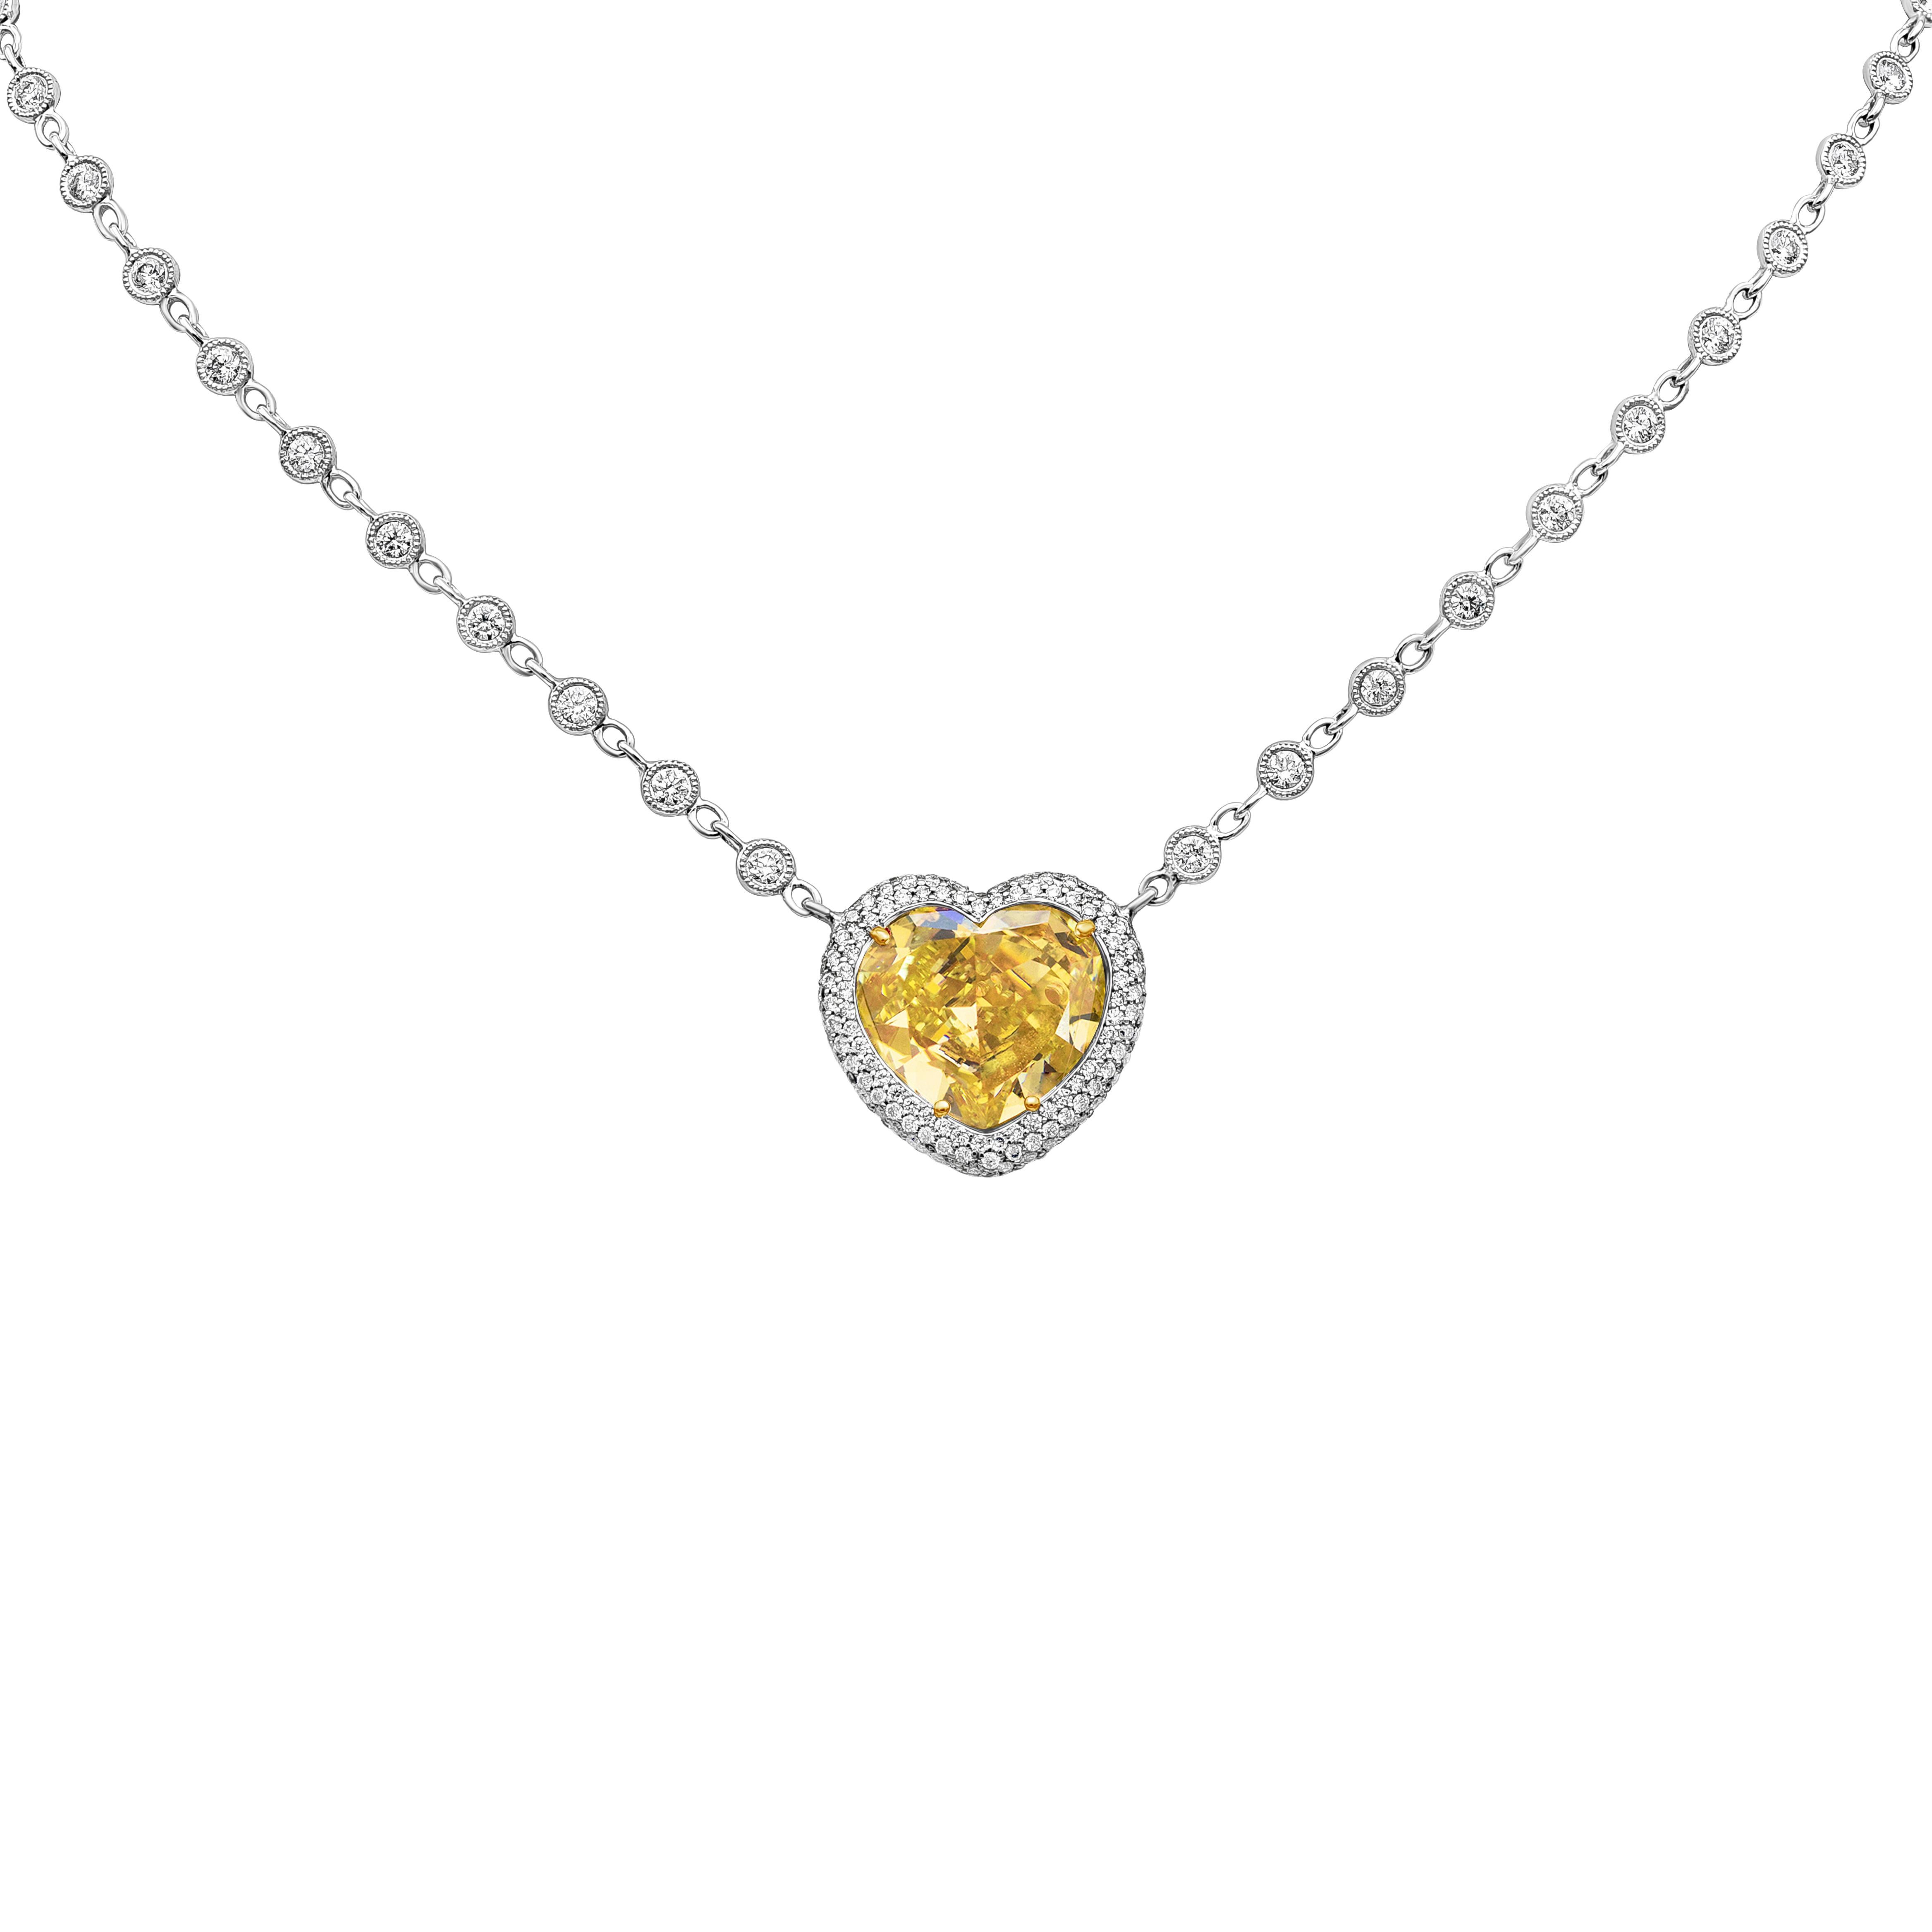 Cet élégant pendentif est orné d'un diamant jaune en forme de cœur de 7,77 carats certifié par le GIA, d'une pureté de SI2. La pierre centrale est rehaussée de 432 diamants ronds de taille brillant sertis en pavé tout autour et au dos, des diamants